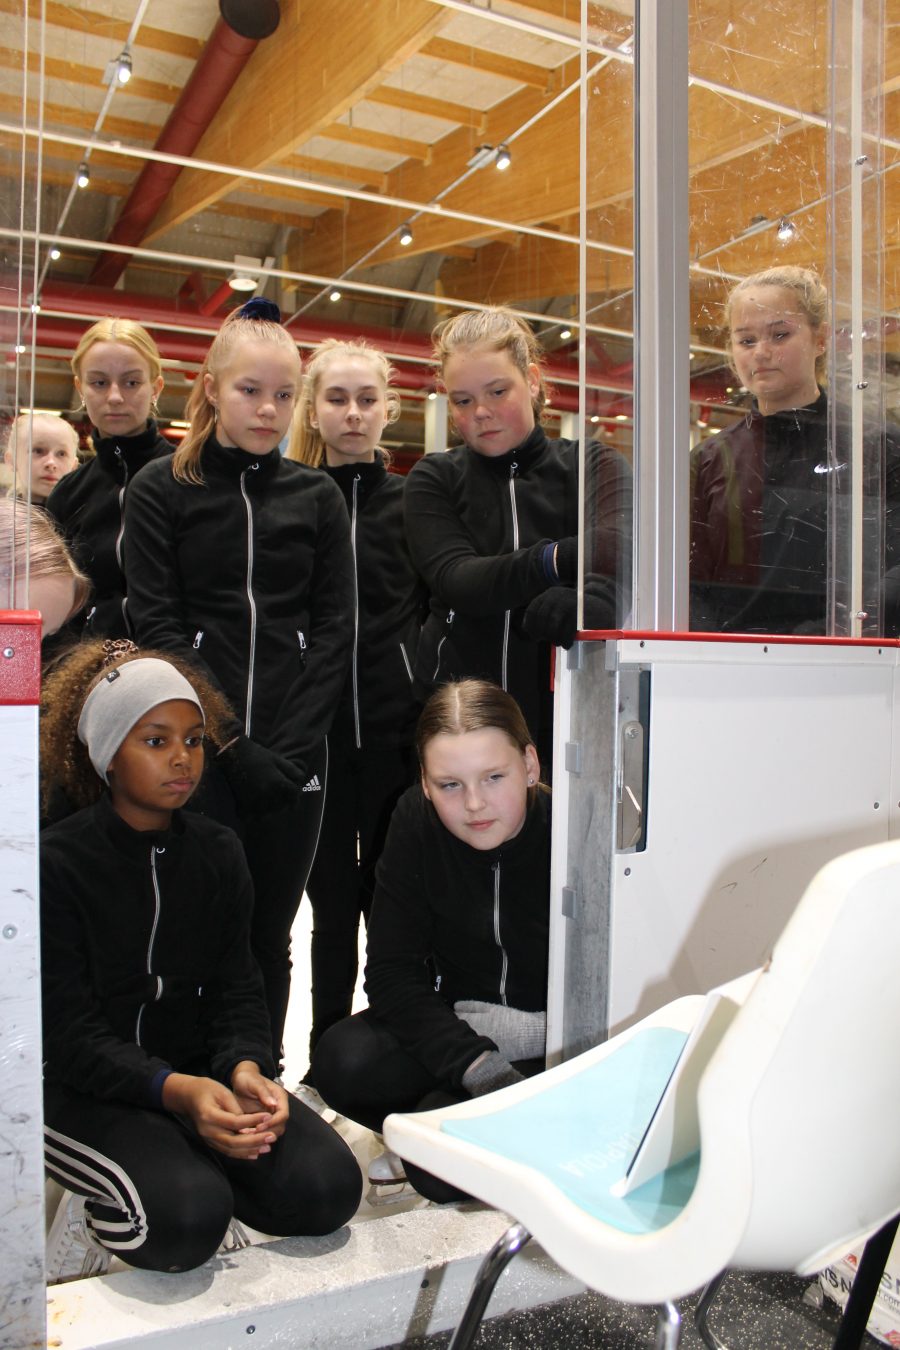 Valmentaja Riina Muotka ja kokkolalainen noviisijoukkue Ice Sparkles avaavat uraa etävalmennukselle. Riina valmentaa joukkueen ohjelmaharjoituksia uudelta kotipaikkakunnaltaan Kouvolasta. Valmentajana jäällä luistelee etätuntien aikana Sini Virtanen.